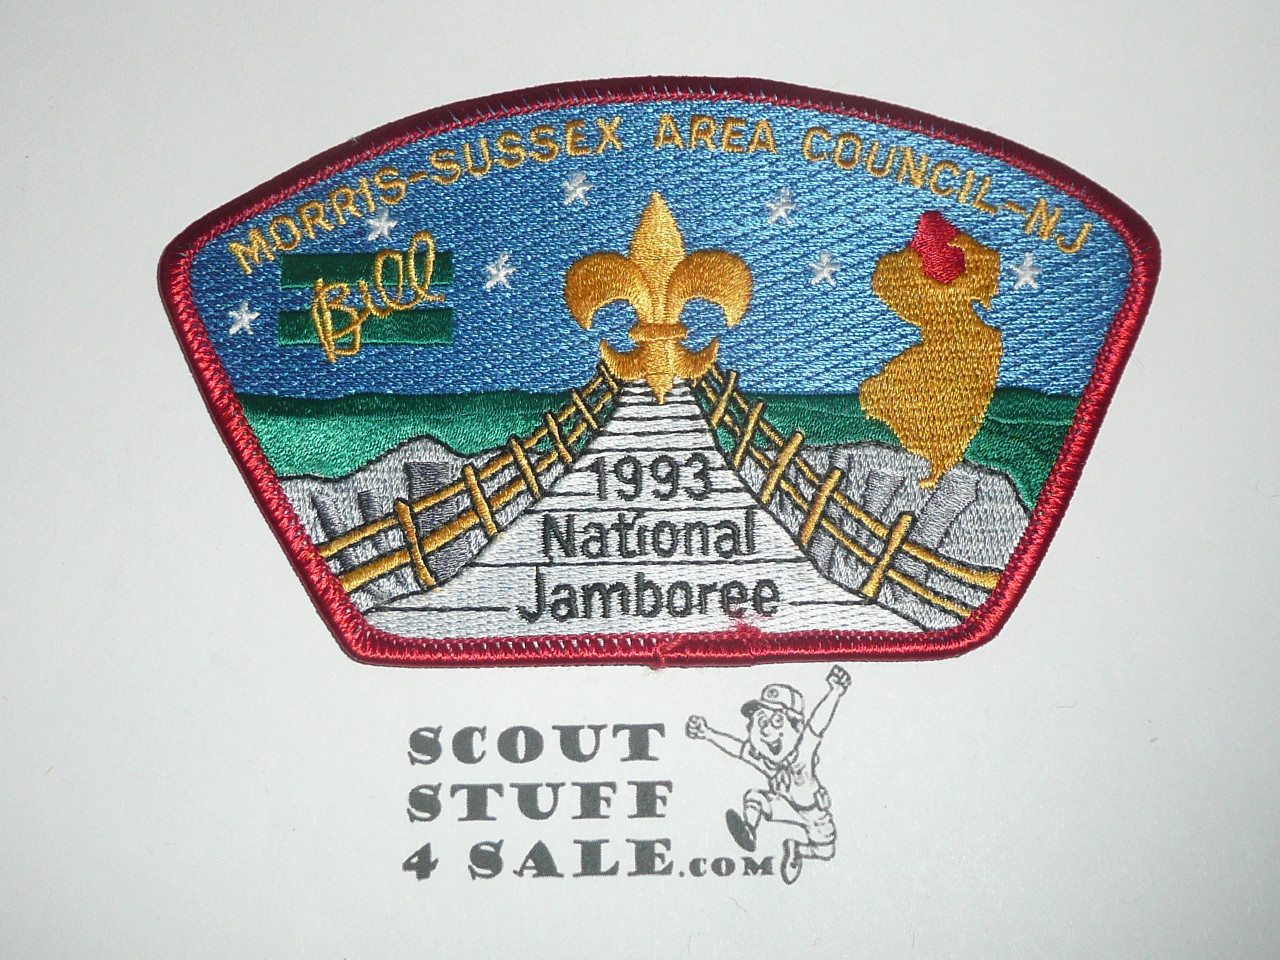 1993 National Jamboree JSP - Morris Sussex Area Council